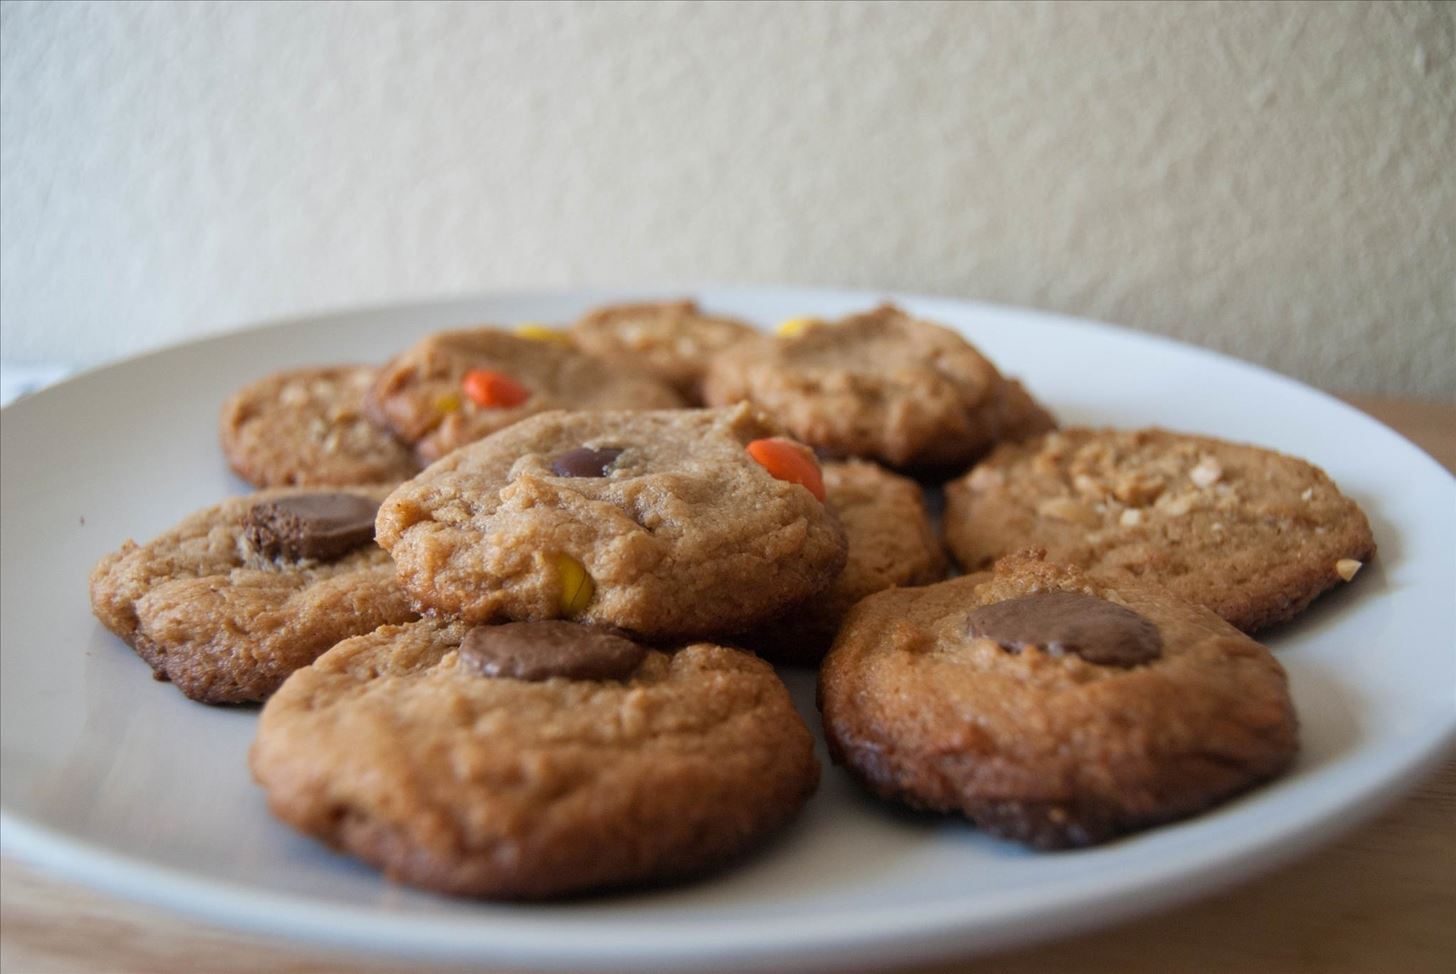 How to Make Flourless, Gluten-Free Peanut Butter Cookies